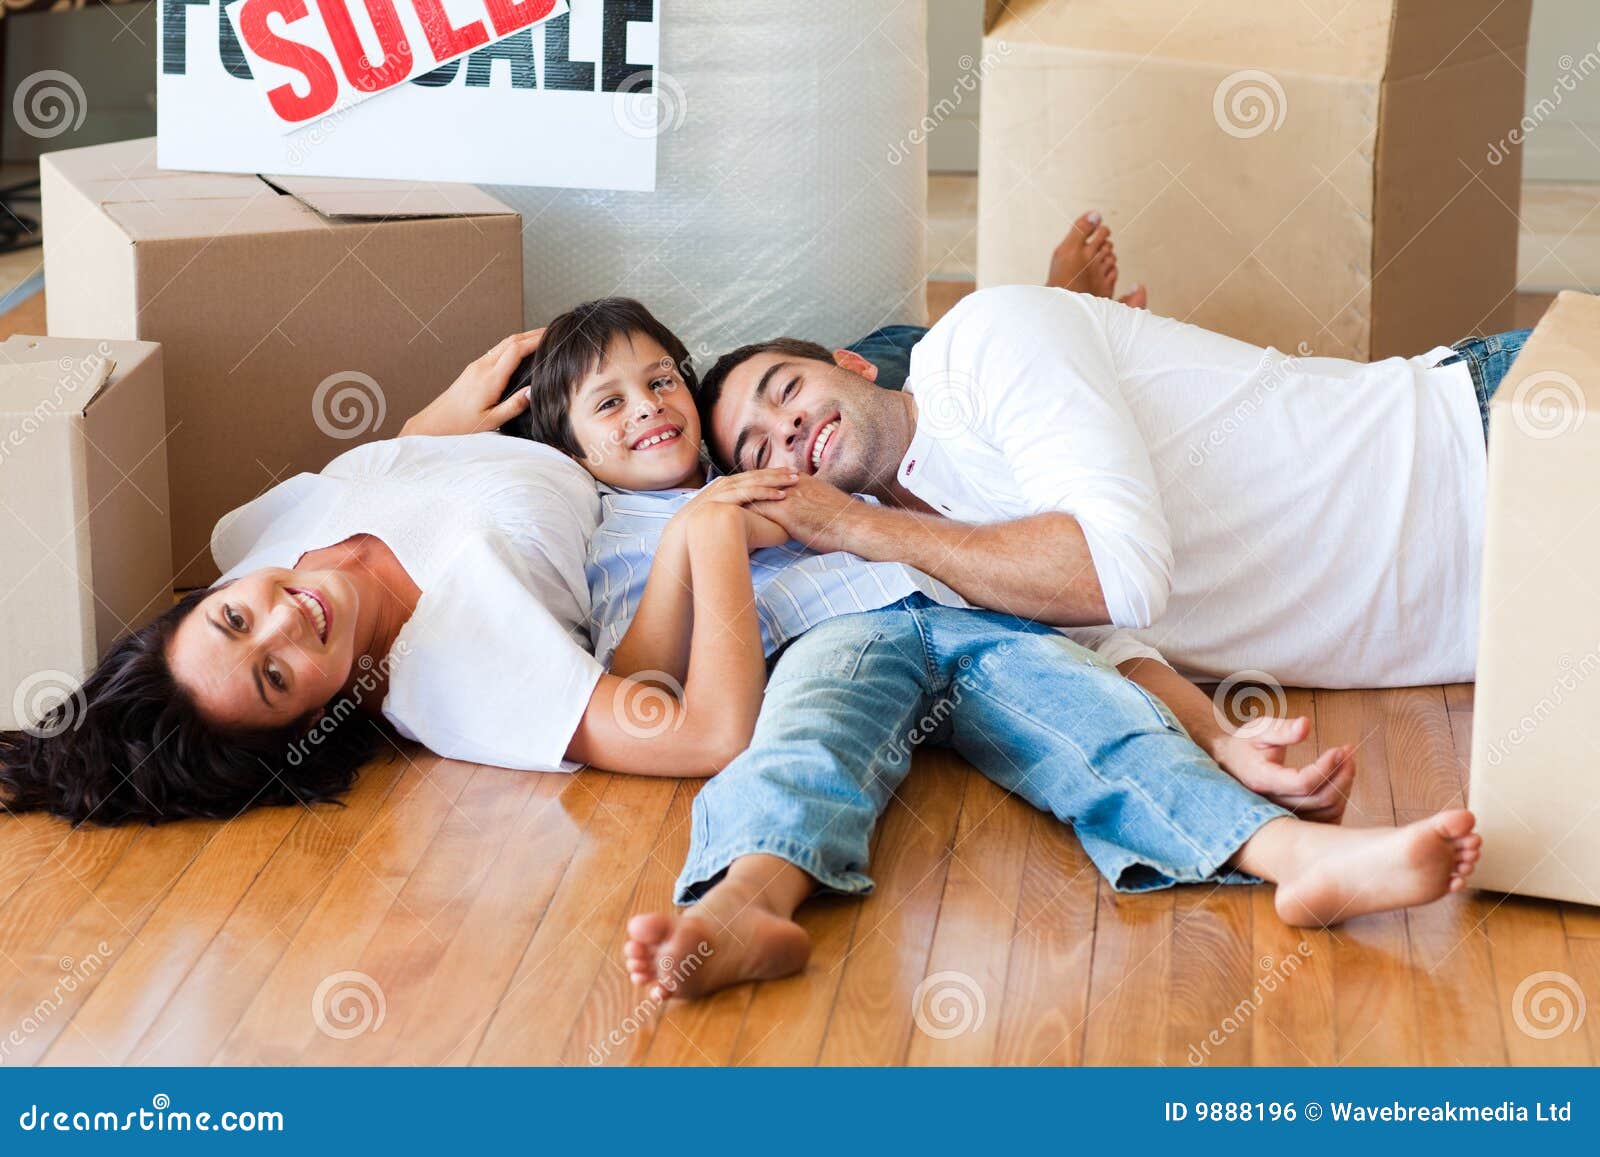 Включи дом лежать. Счастливая семья на полу. Семья лежит на полу. Счастливая семья лежит на полу. Семья лежит на теплом полу.